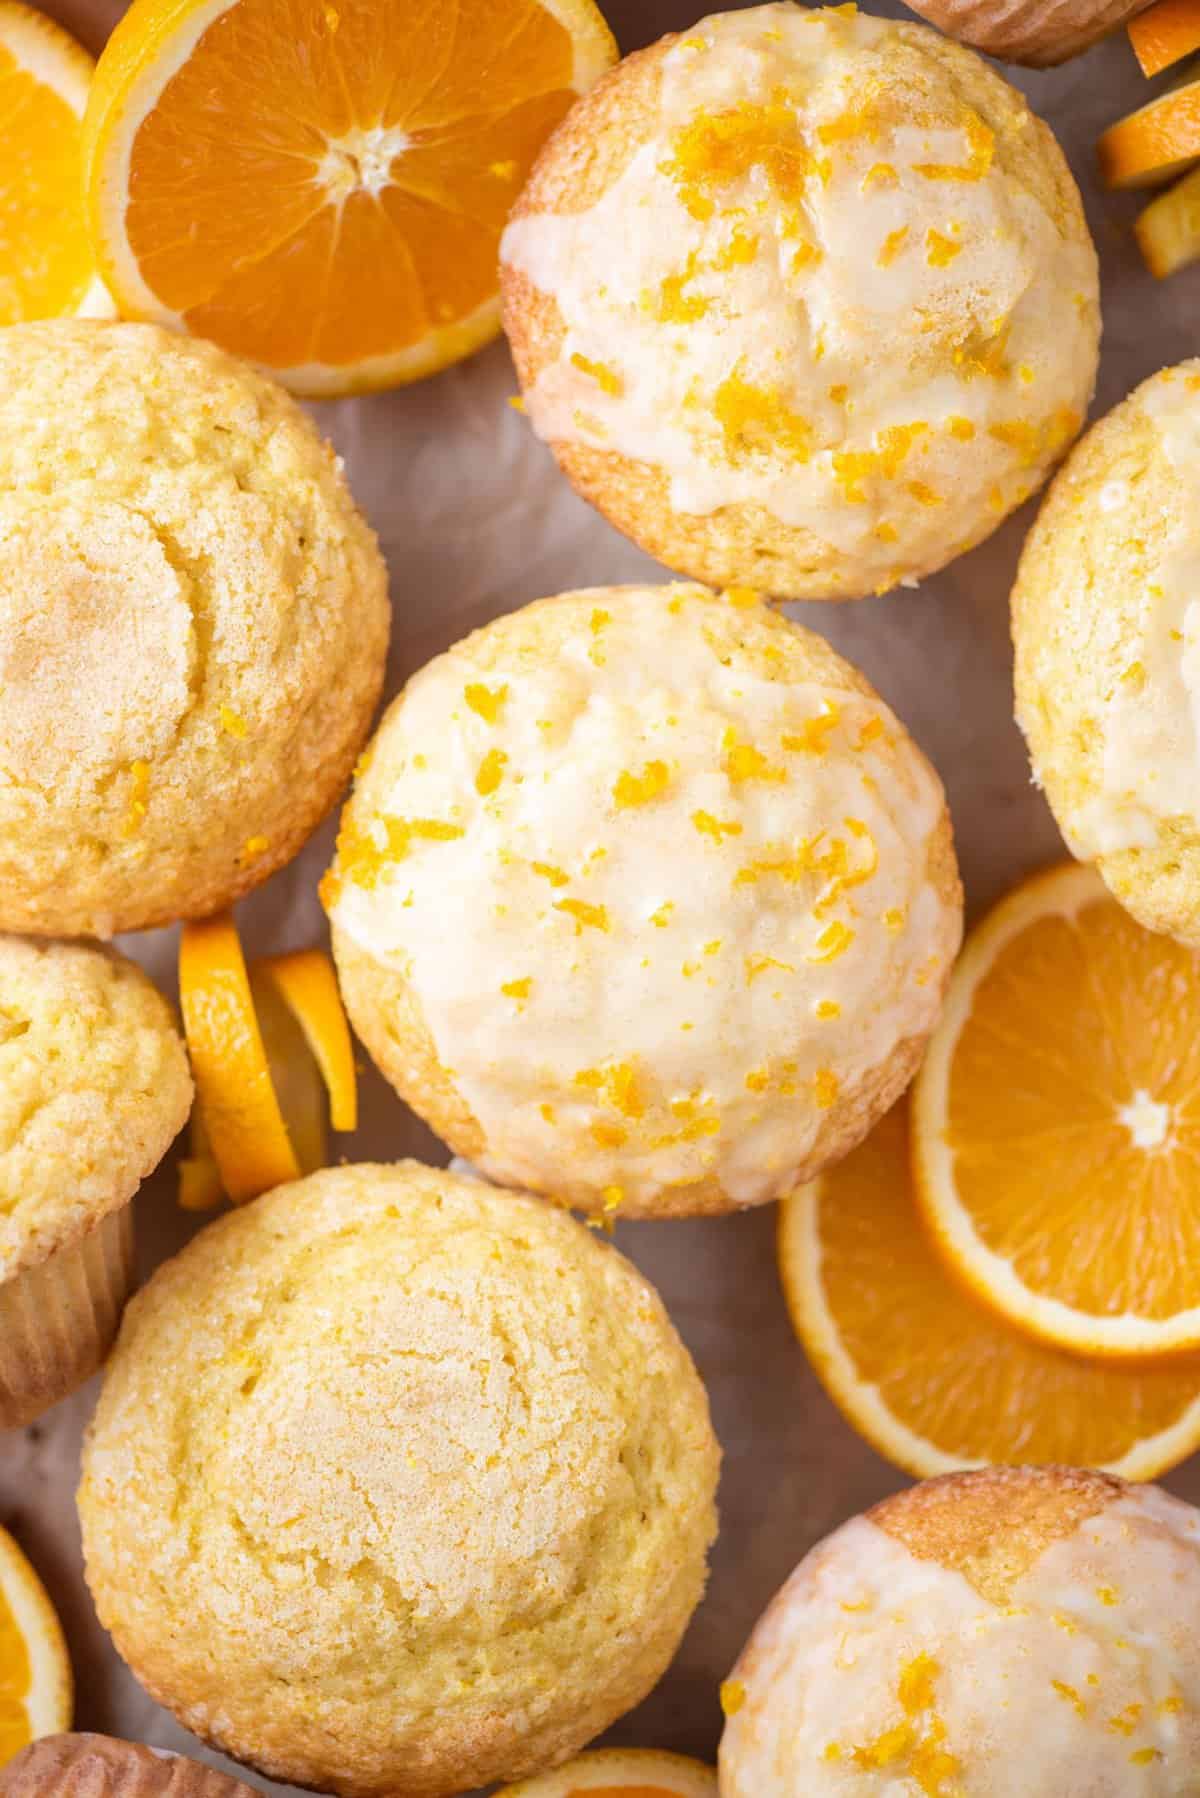 orange muffins arranged in a grid pattern with orange slices